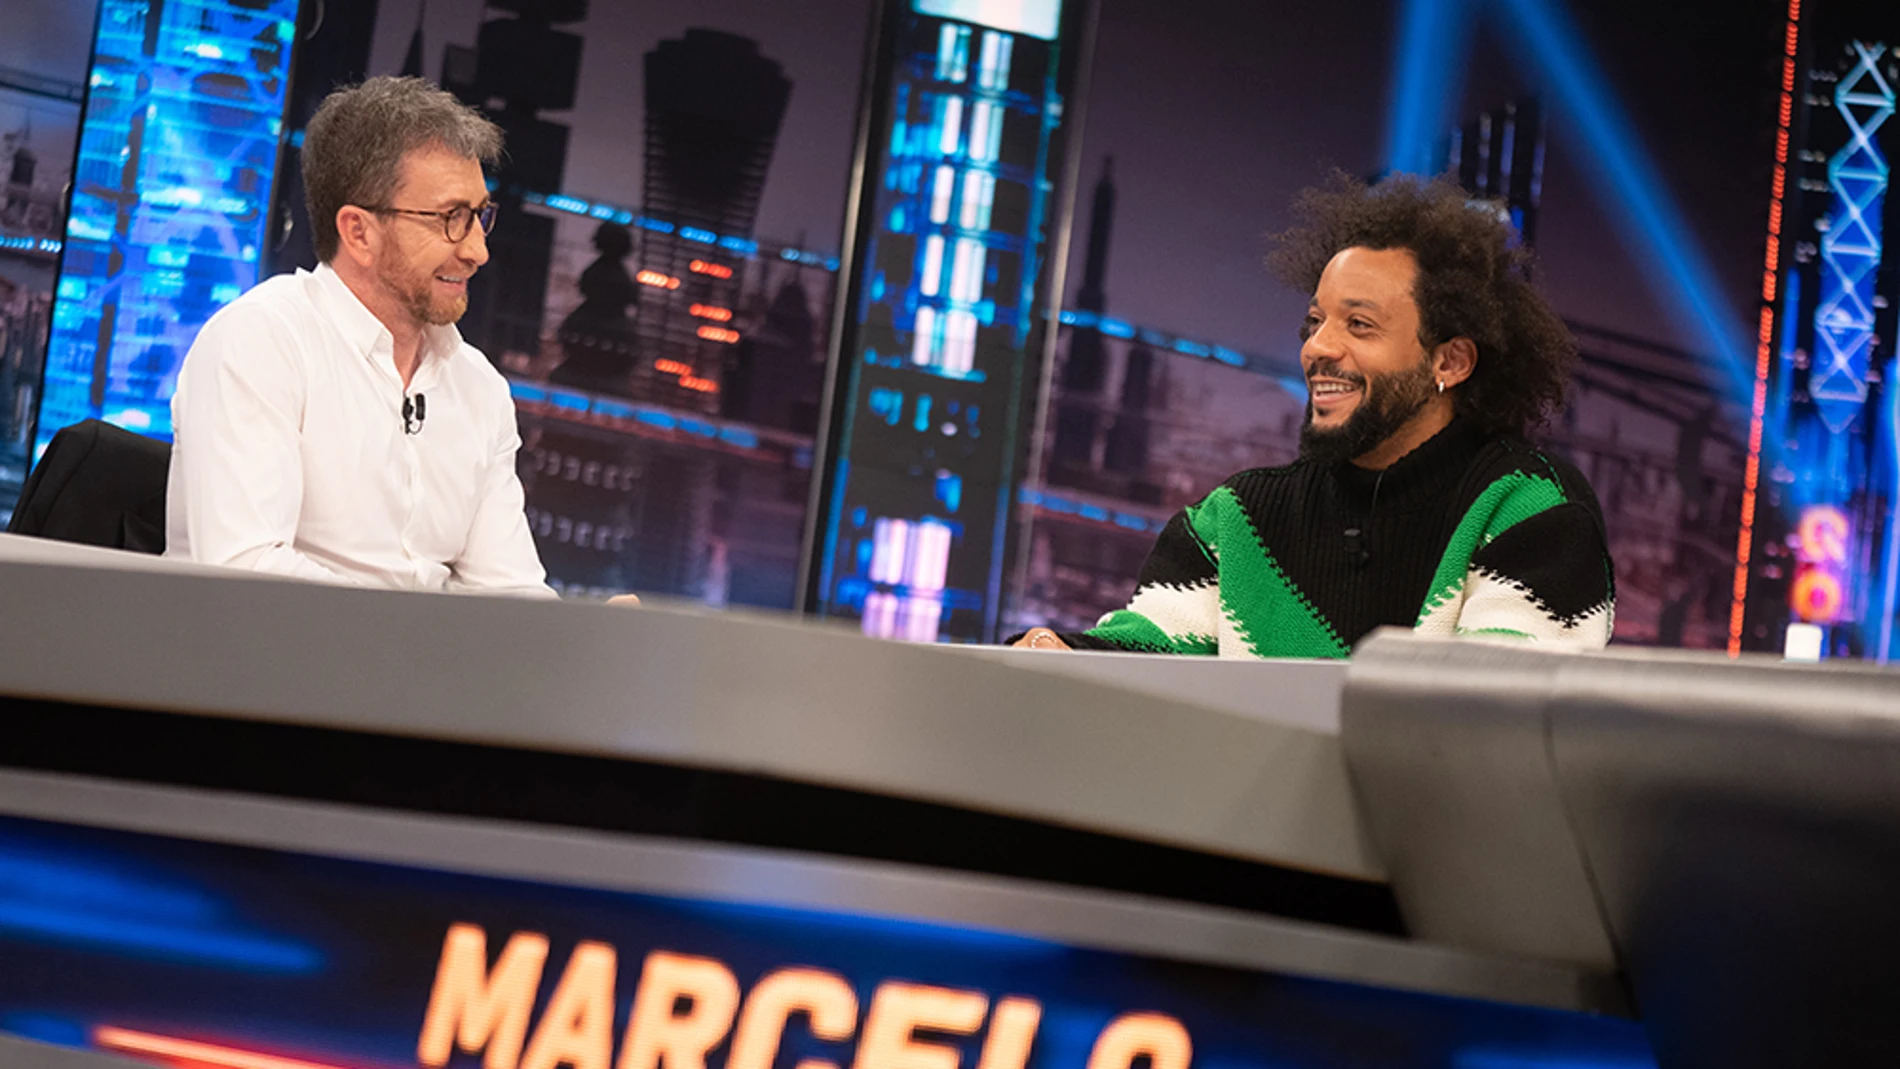 Marcelo aclara el bulo sobre a lo que se dedicaría tras su retirada como futbolista